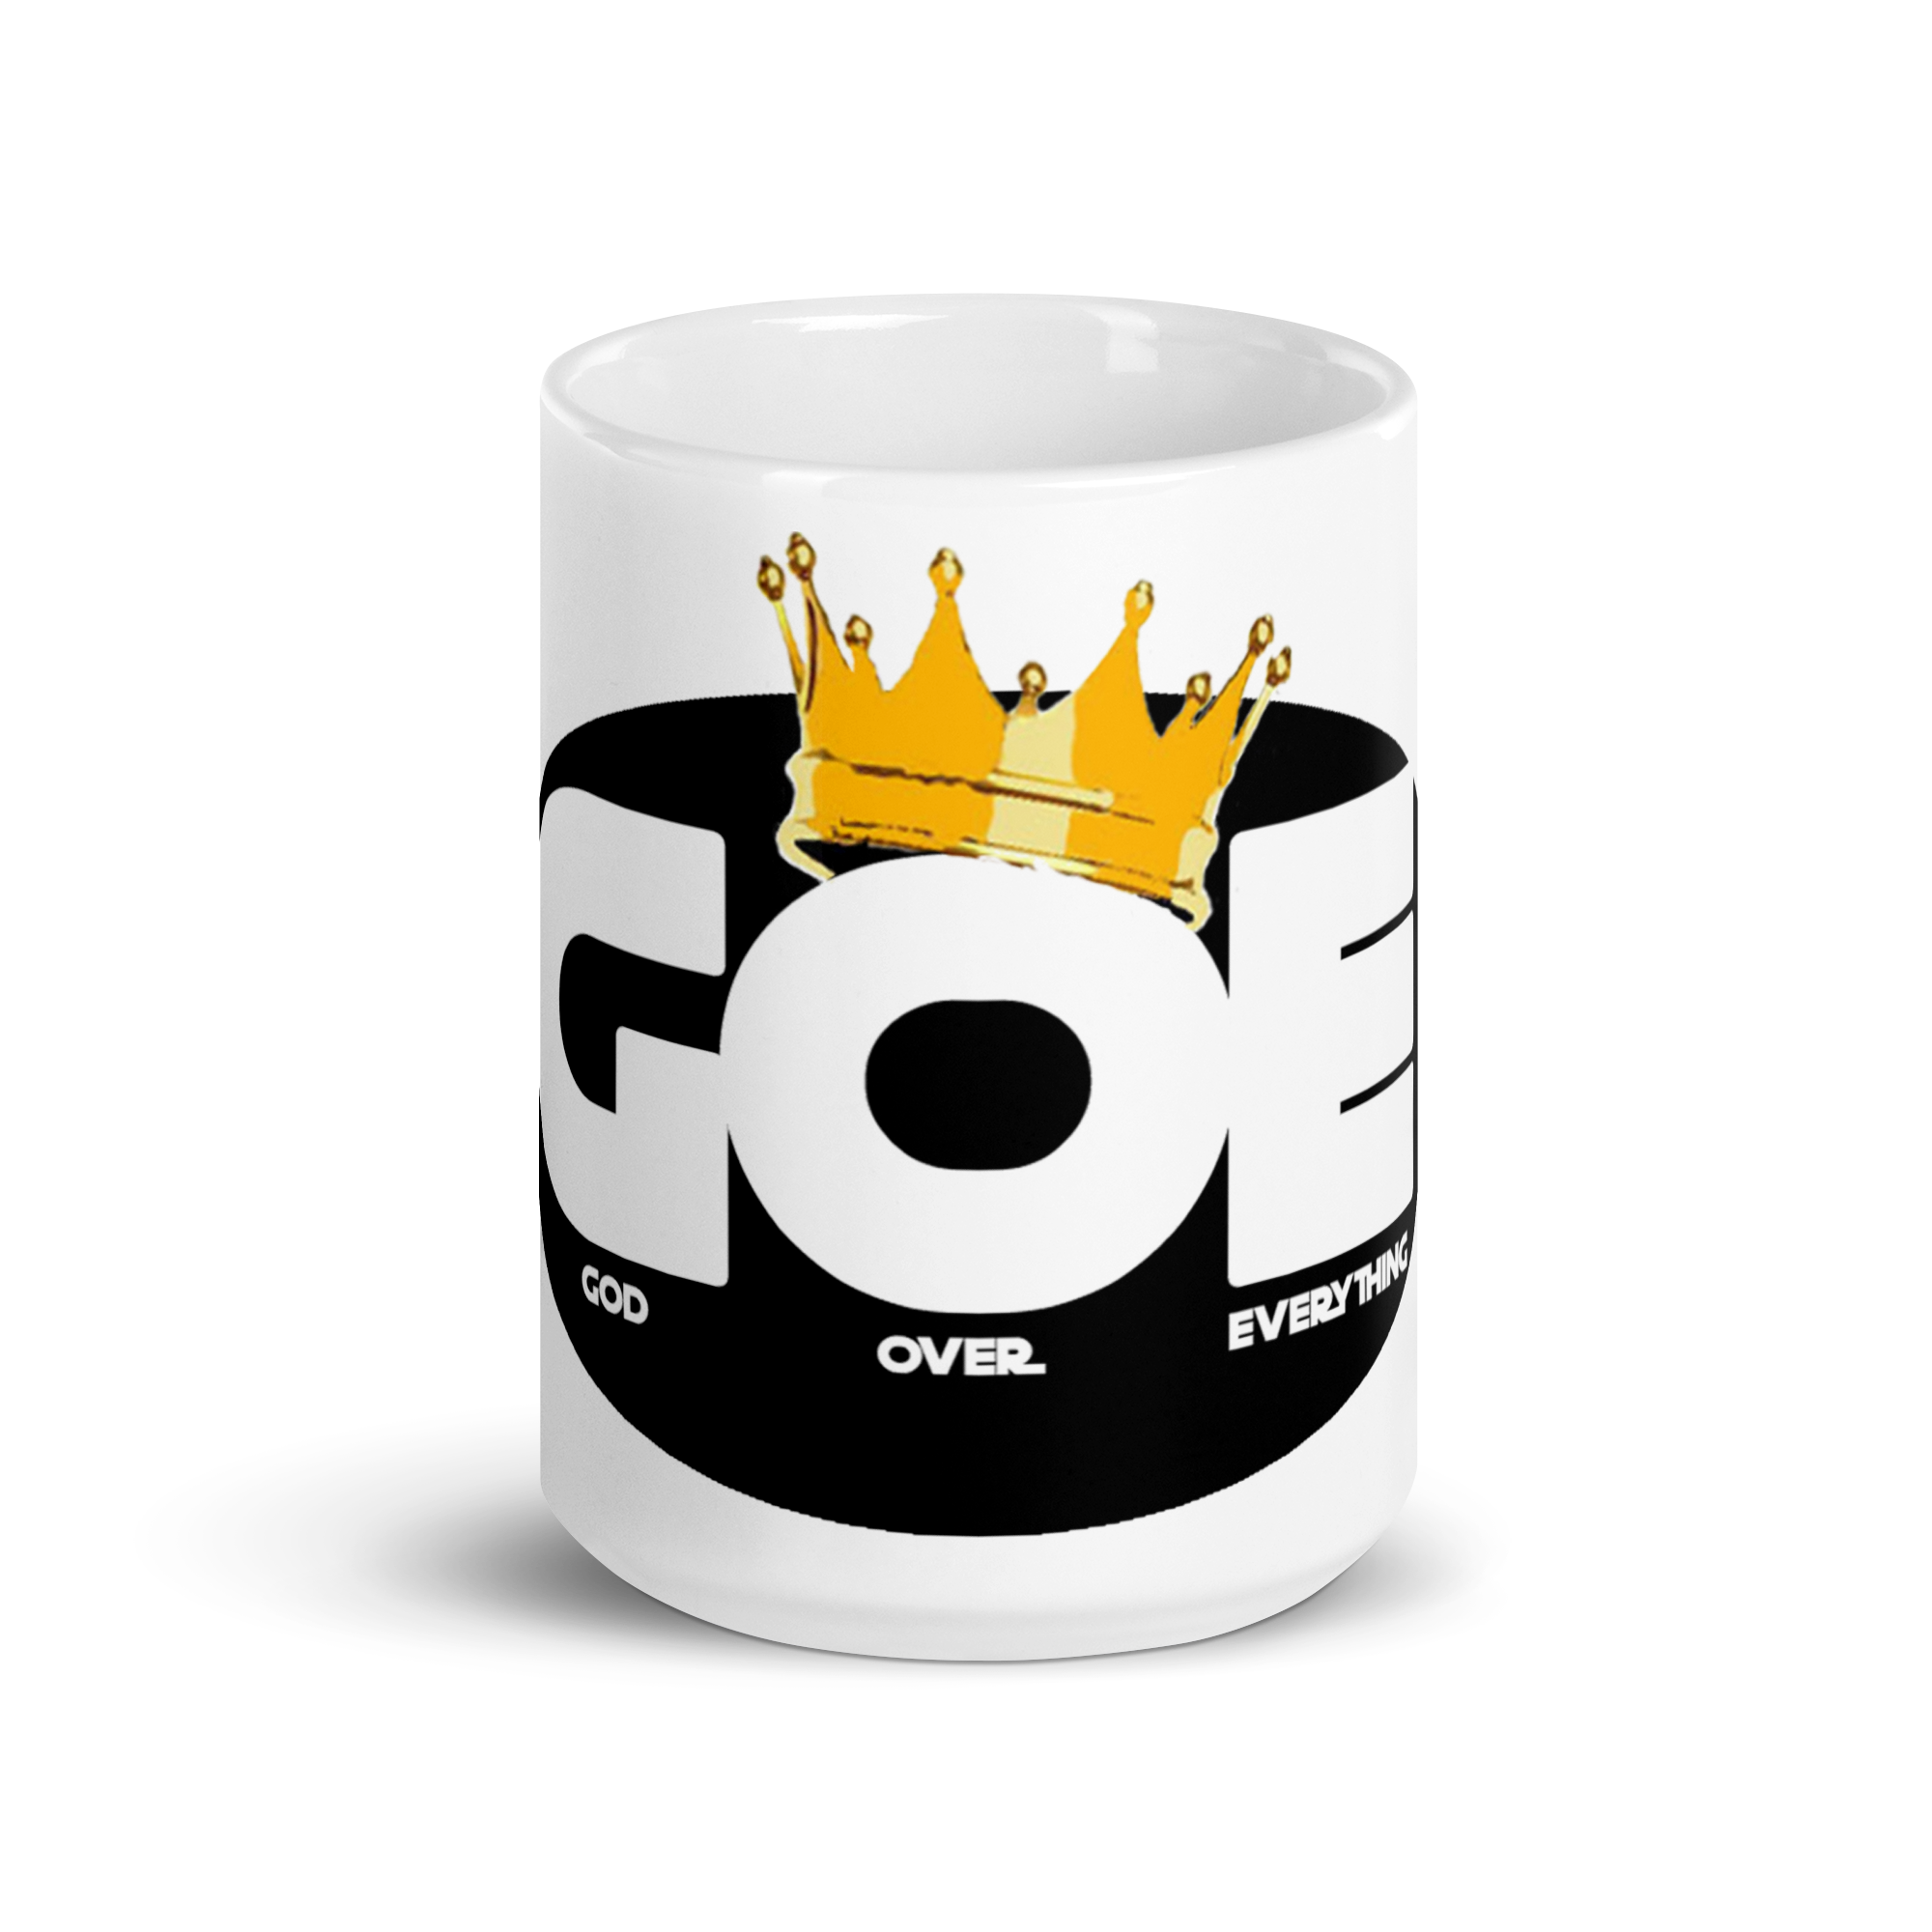 (G.O.E.) God Over Everything  White glossy mug